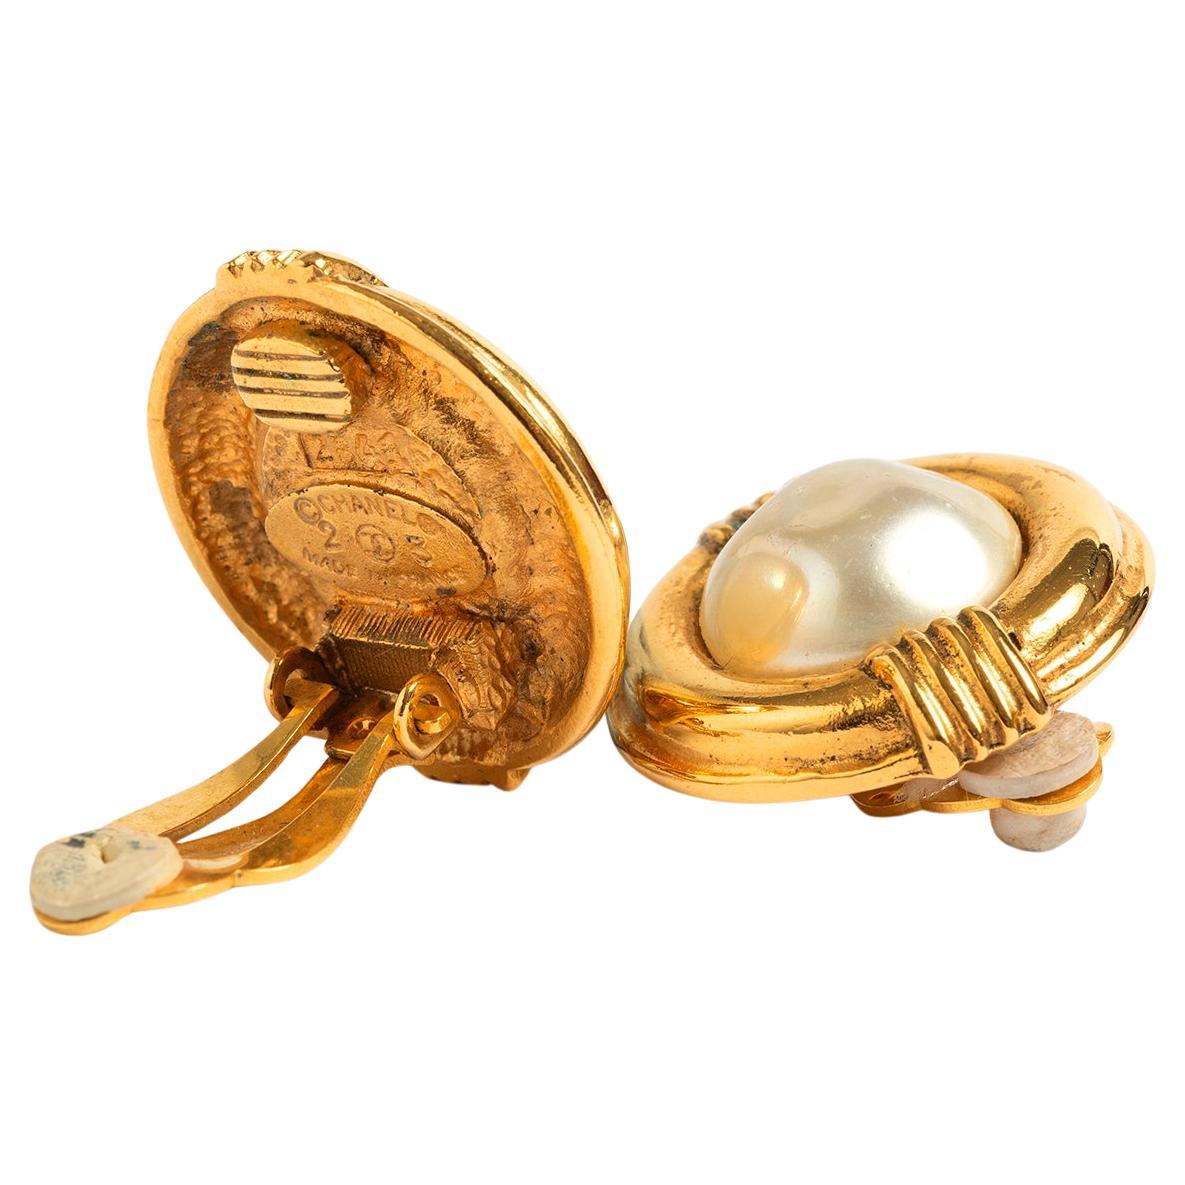 I nostri orecchini vintage Chanel hanno una base e una clip in metallo dorato con perla simulata al centro. Si tratta della prima bigiotteria Chanel, timbrata 23 2641, risalente alla stagione 24 del 1984, disegnata da Victoire d Castellane sotto la